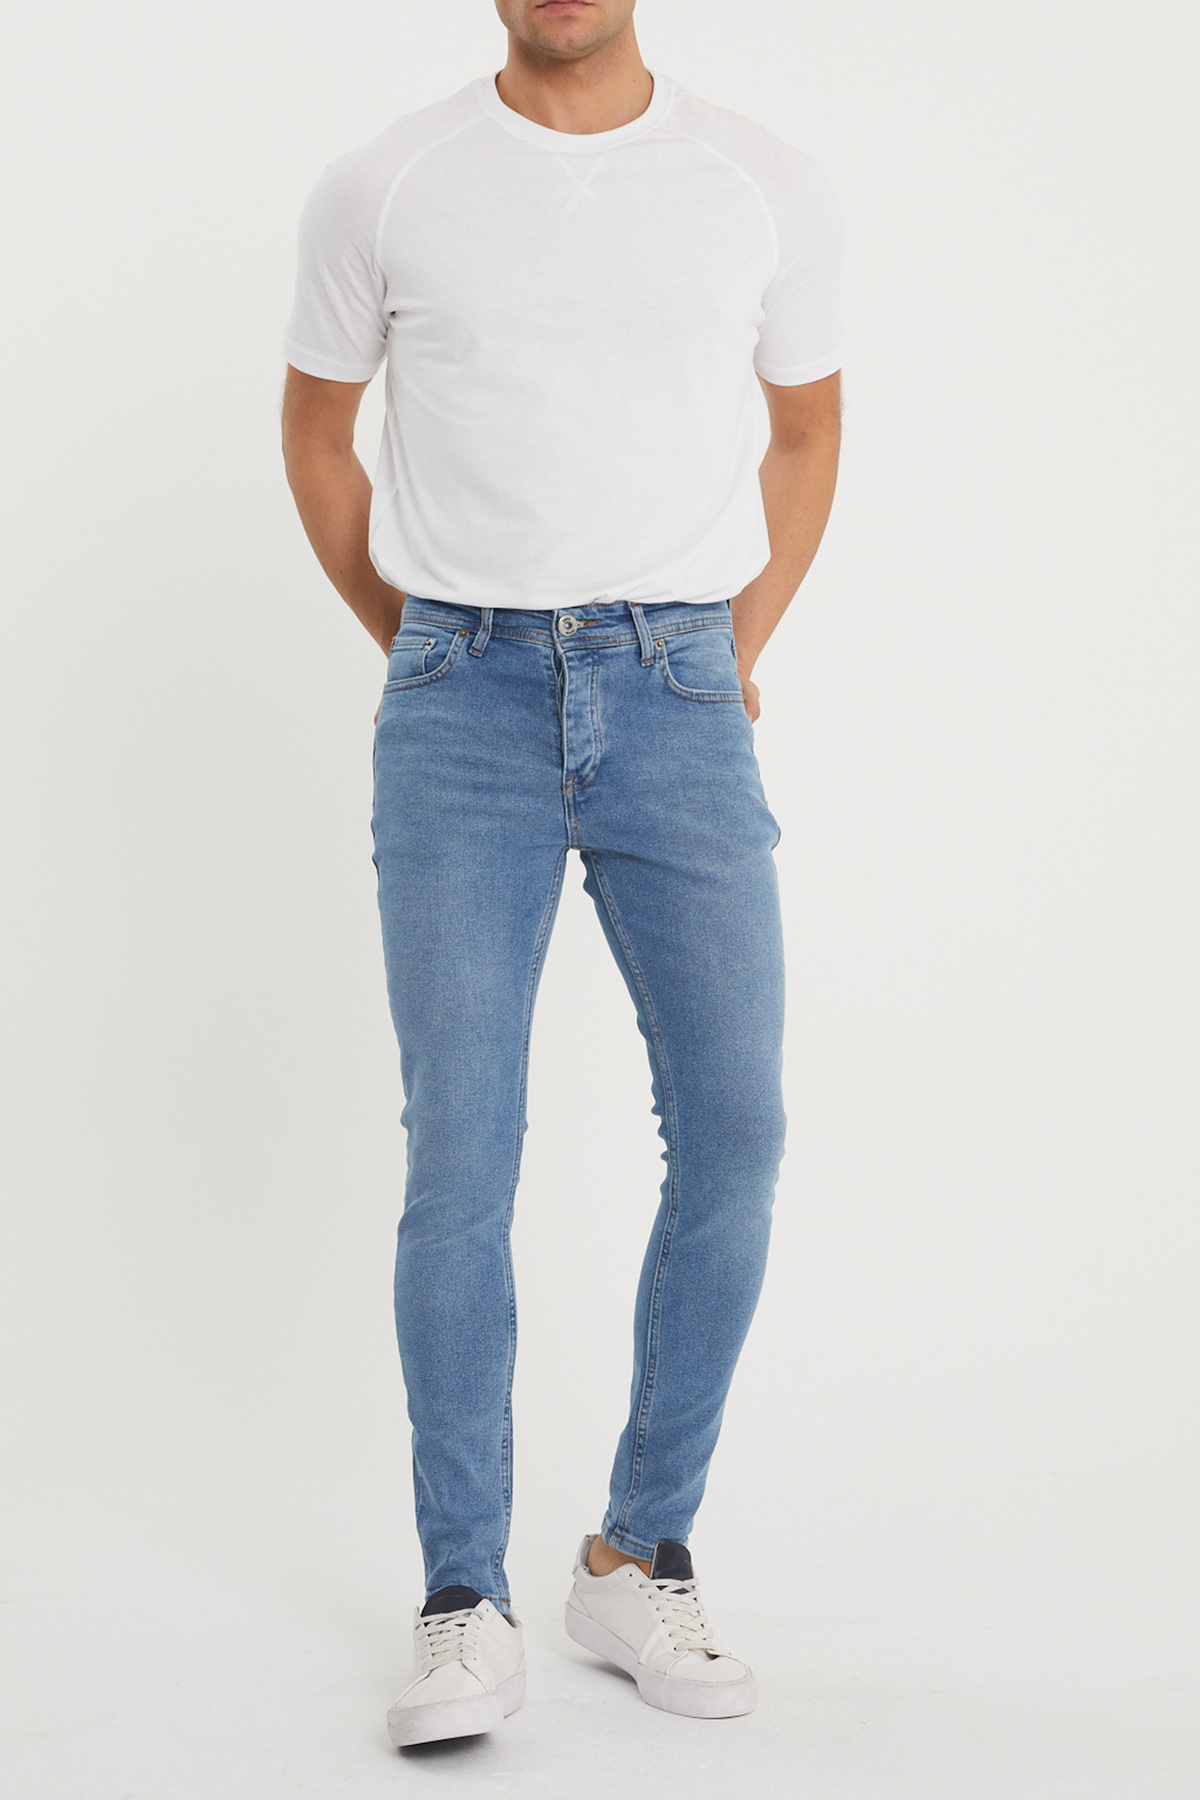 Mavi Slim Fit Jean Pantolon 1KXE5-44351-12 - 4